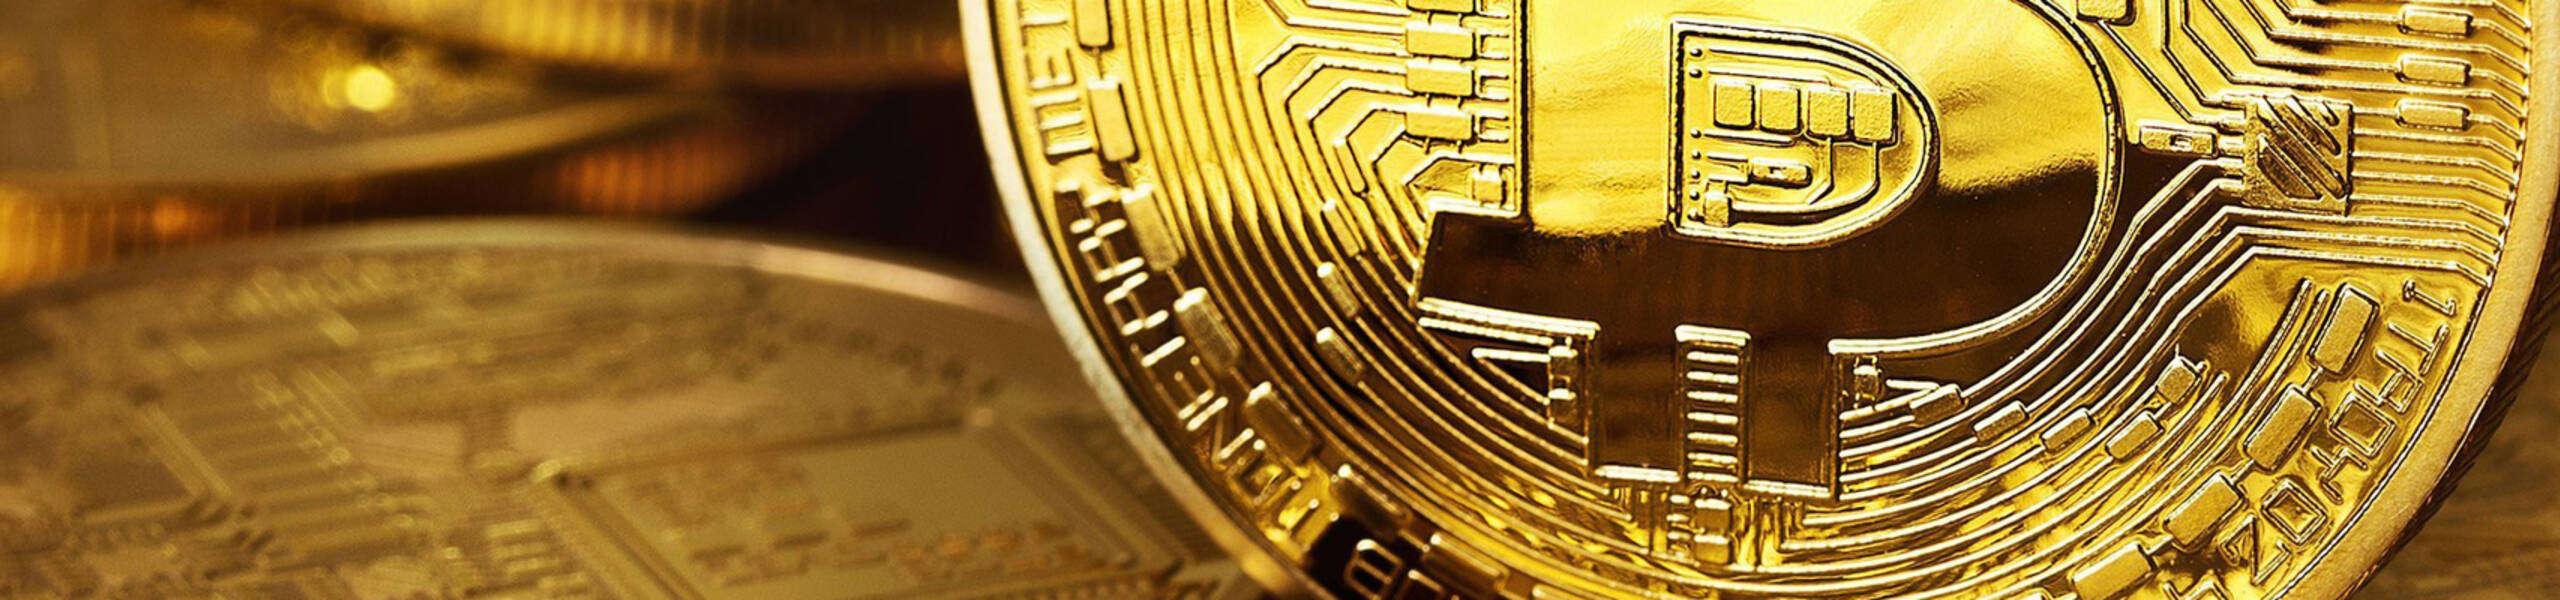 Bitcoin mergulha em meio ao declínio global das criptomoedas